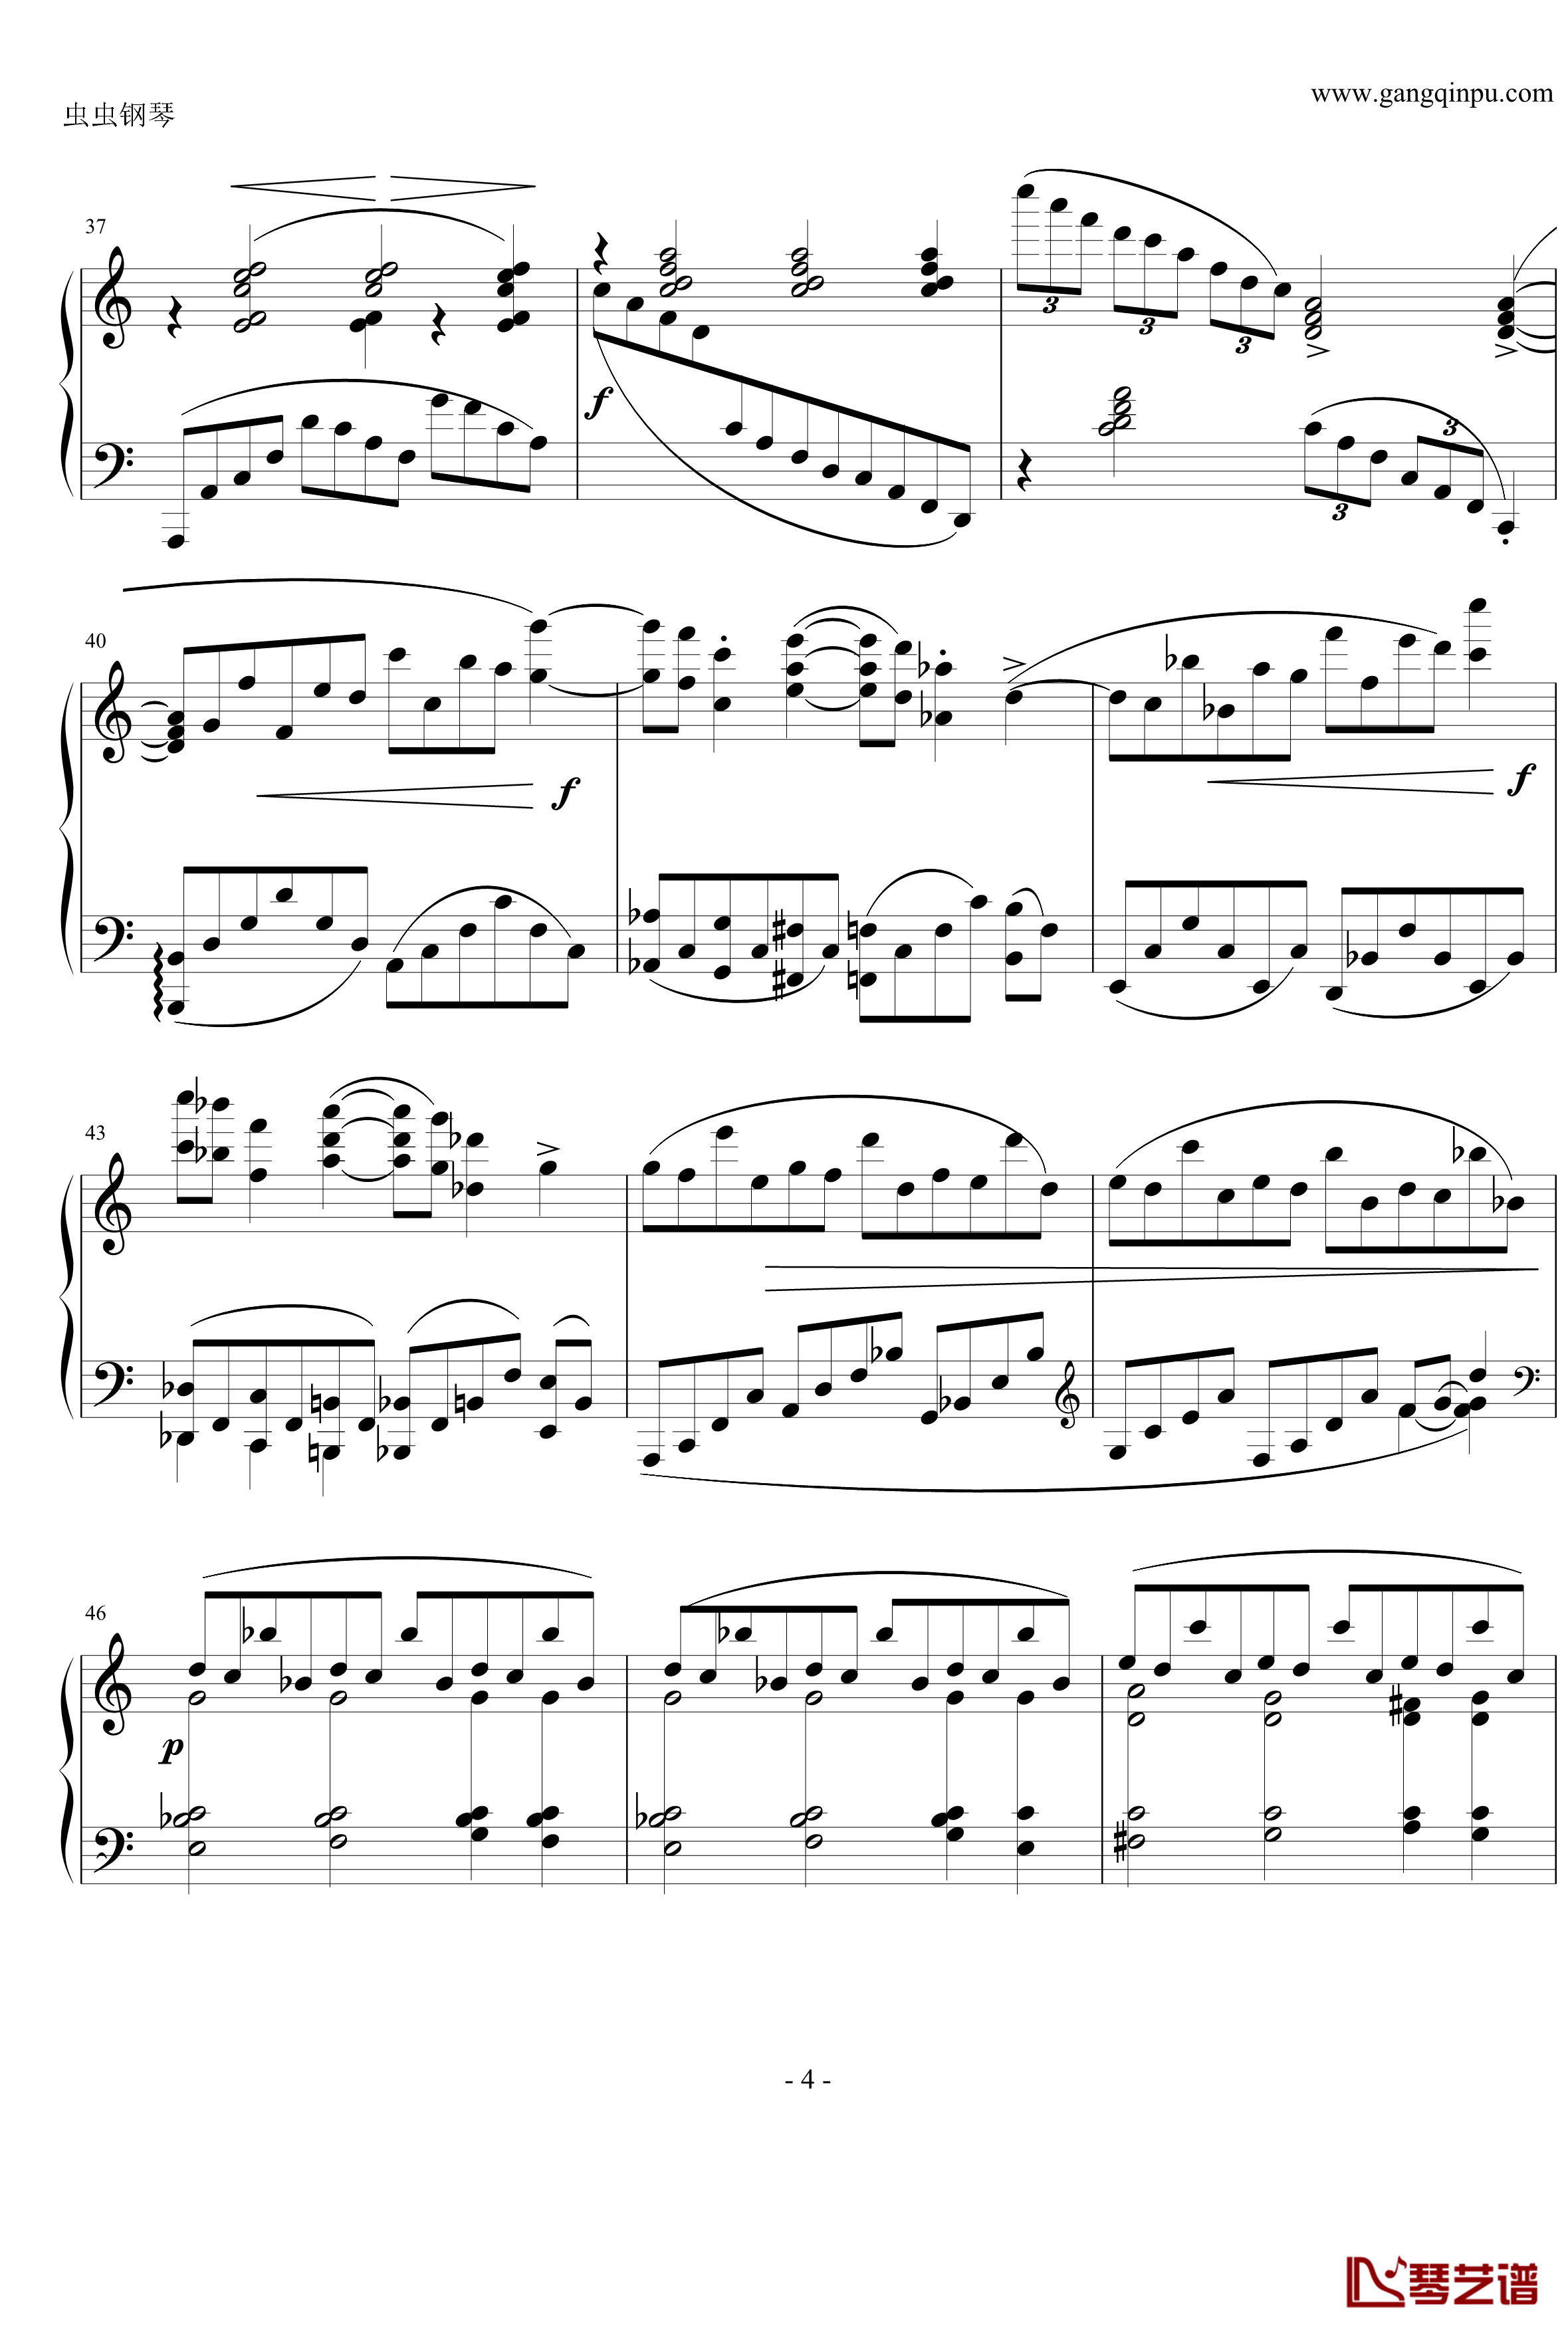 随想曲钢琴谱Op.76 No.8-勃拉姆斯-Brahms4